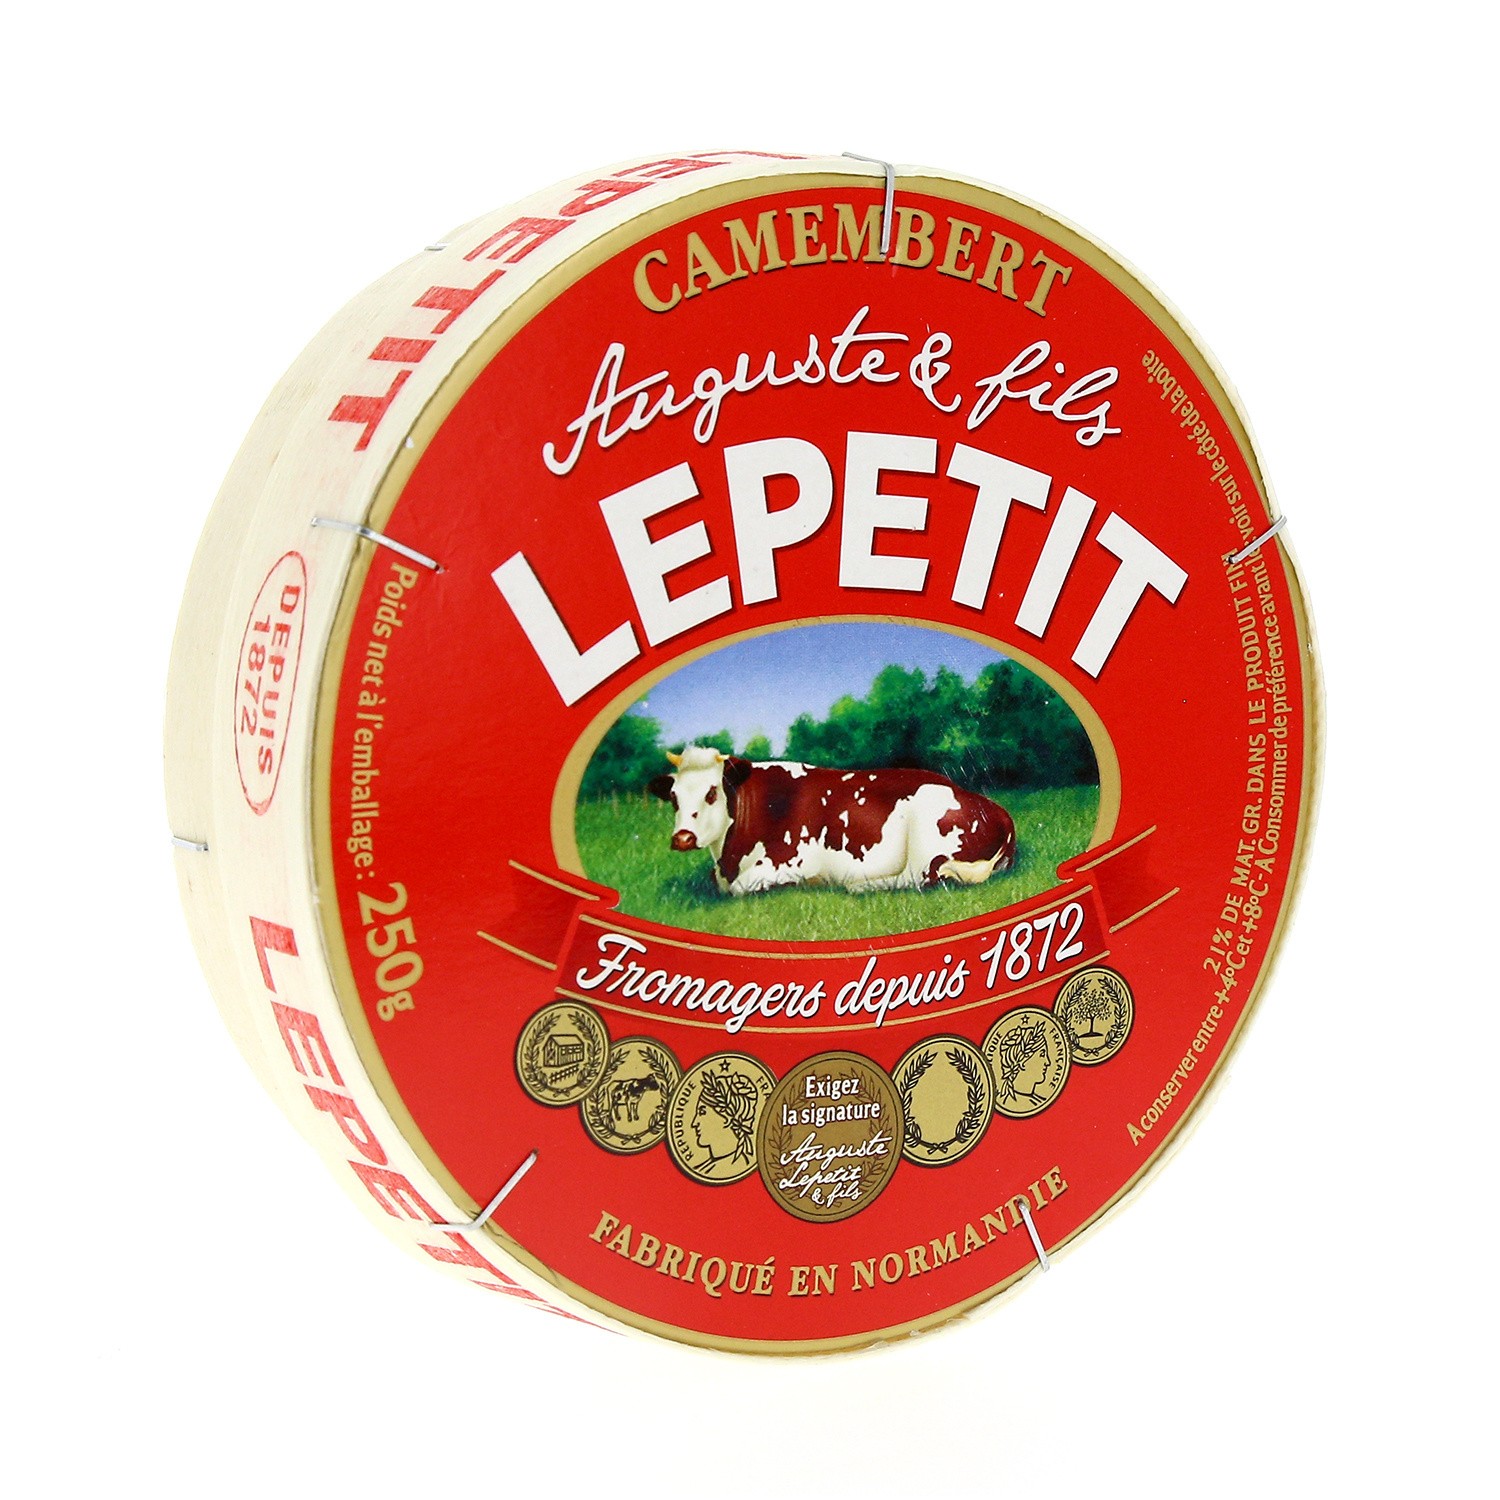  Camembert  LEPETIT LEPETIT  3228020190427